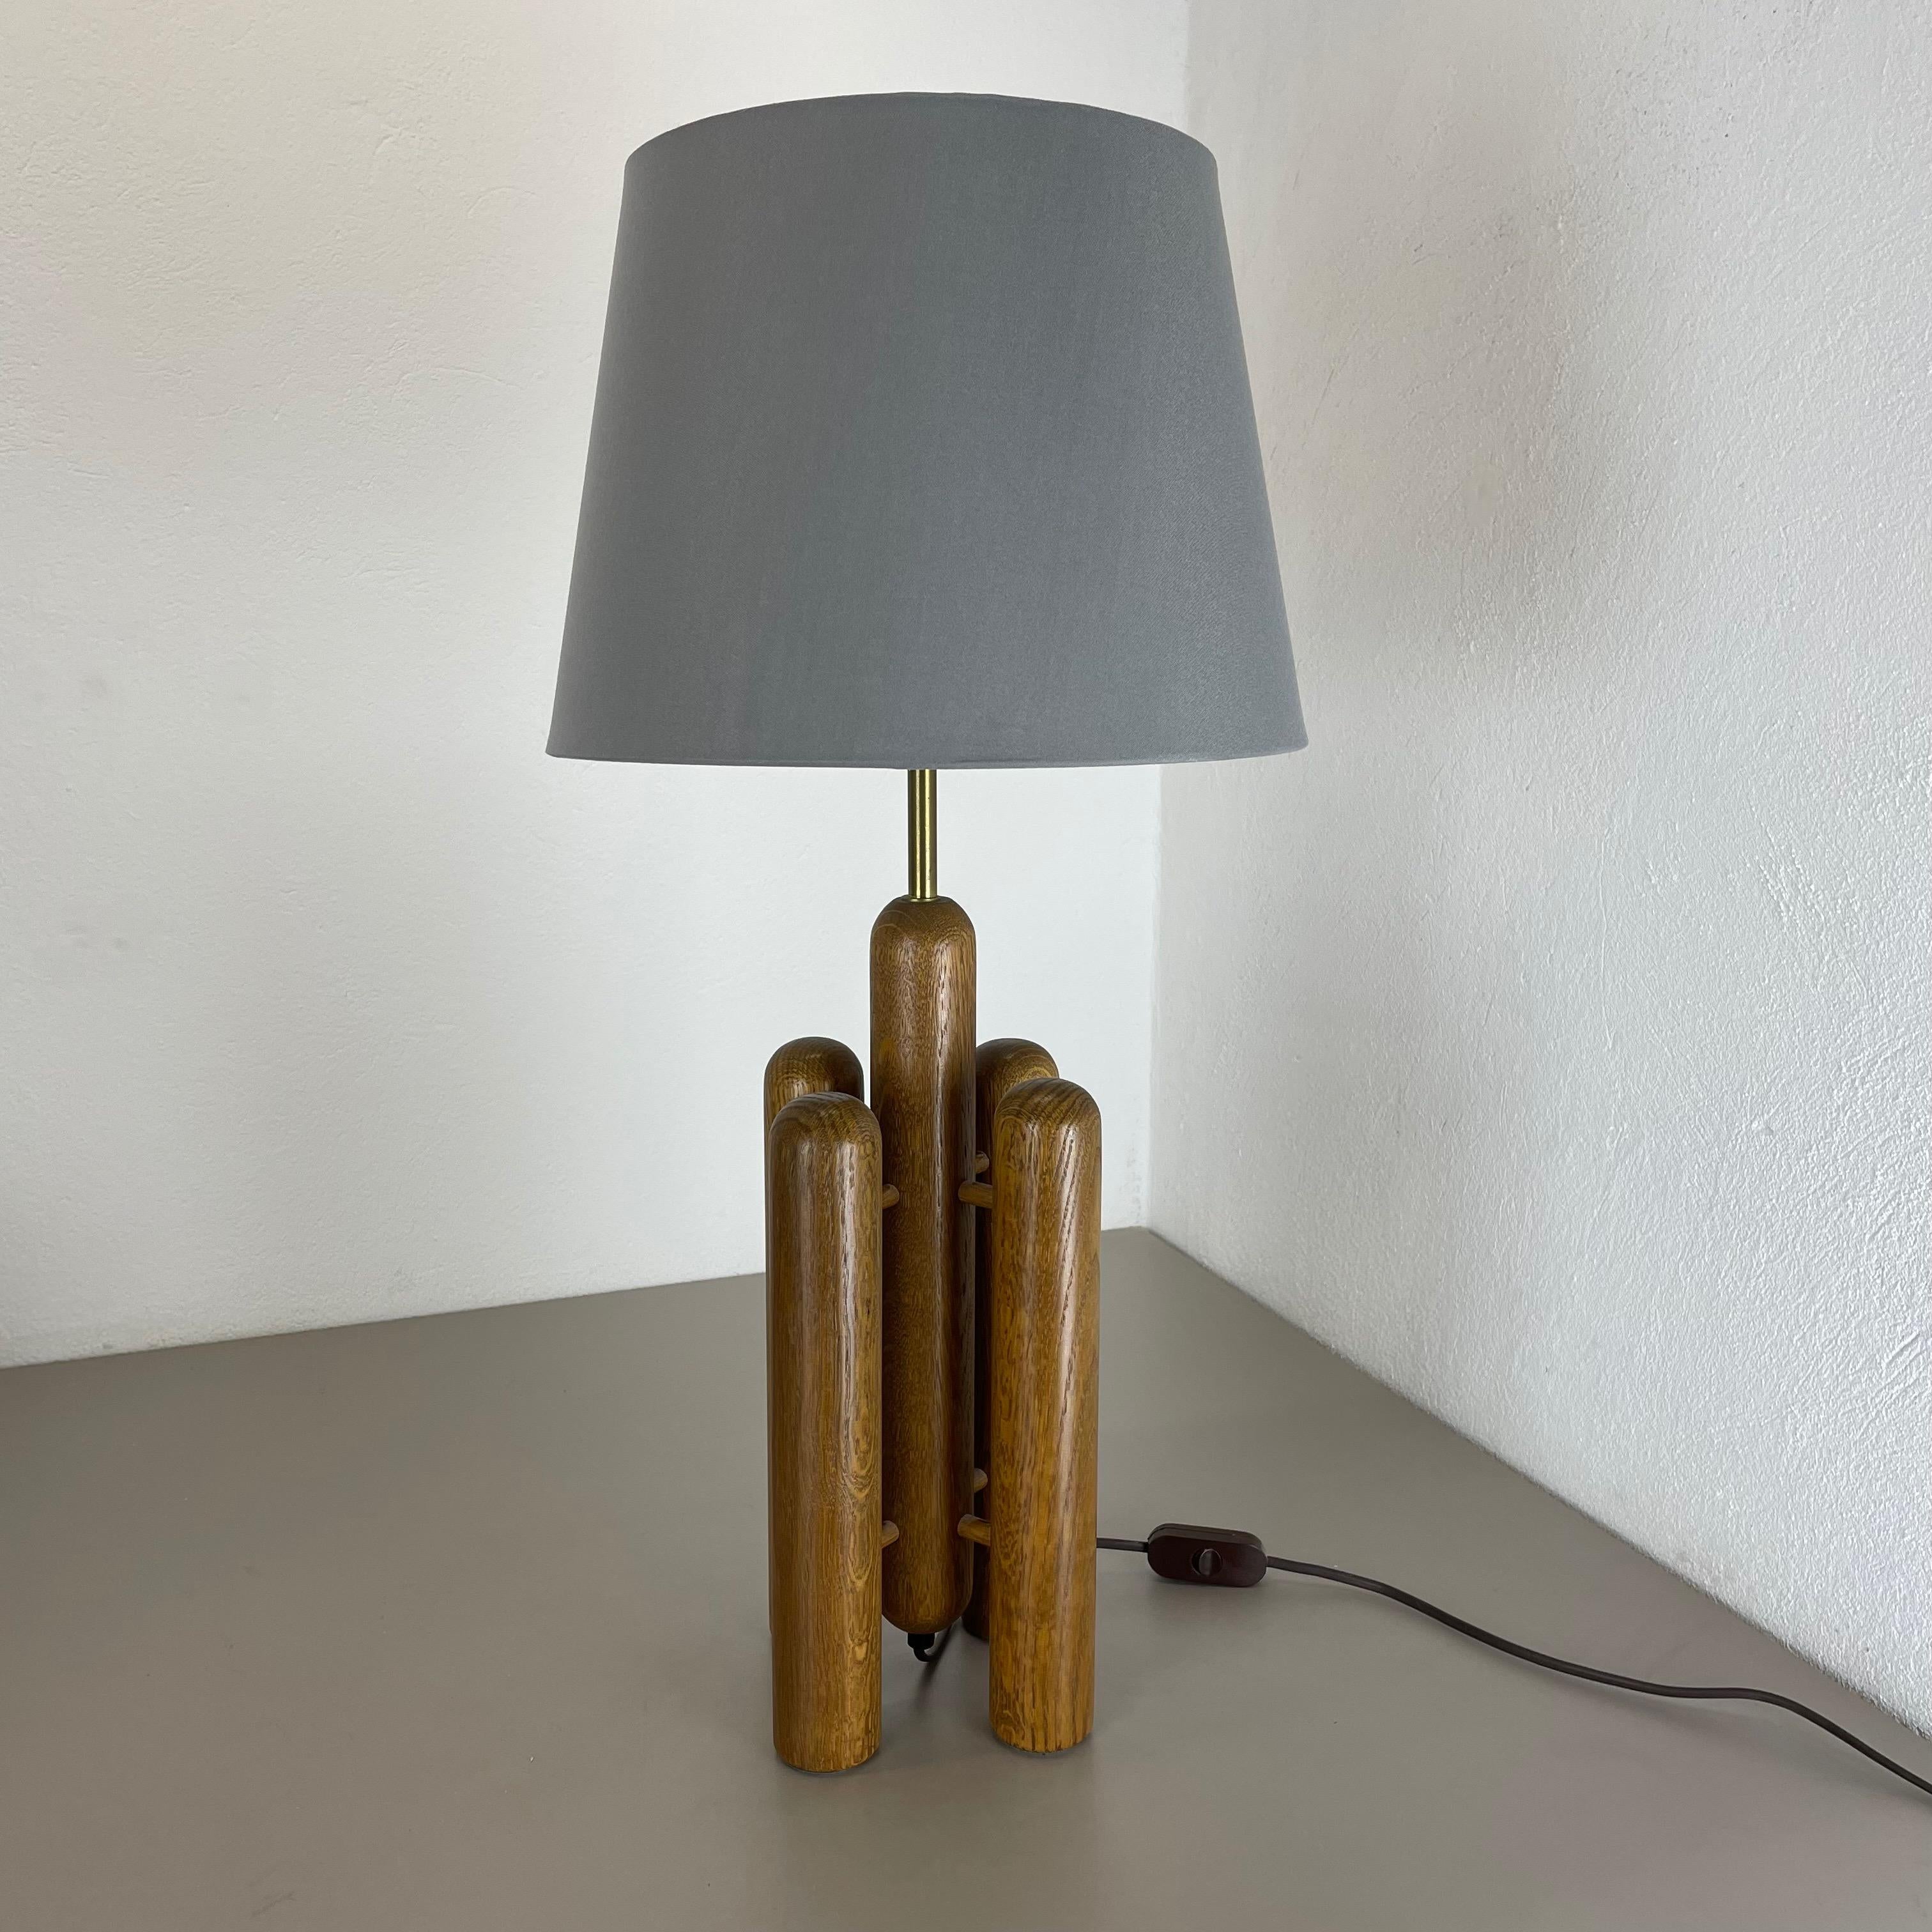 Article :

lampe de table organique en bois


Producteur :

TEMDE Lights, Allemagne



Origine :

Allemagne



Âge :

1970s




Base de lampe de table en bois originale des années 1970, fabriquée en Allemagne. Production allemande de haute qualité